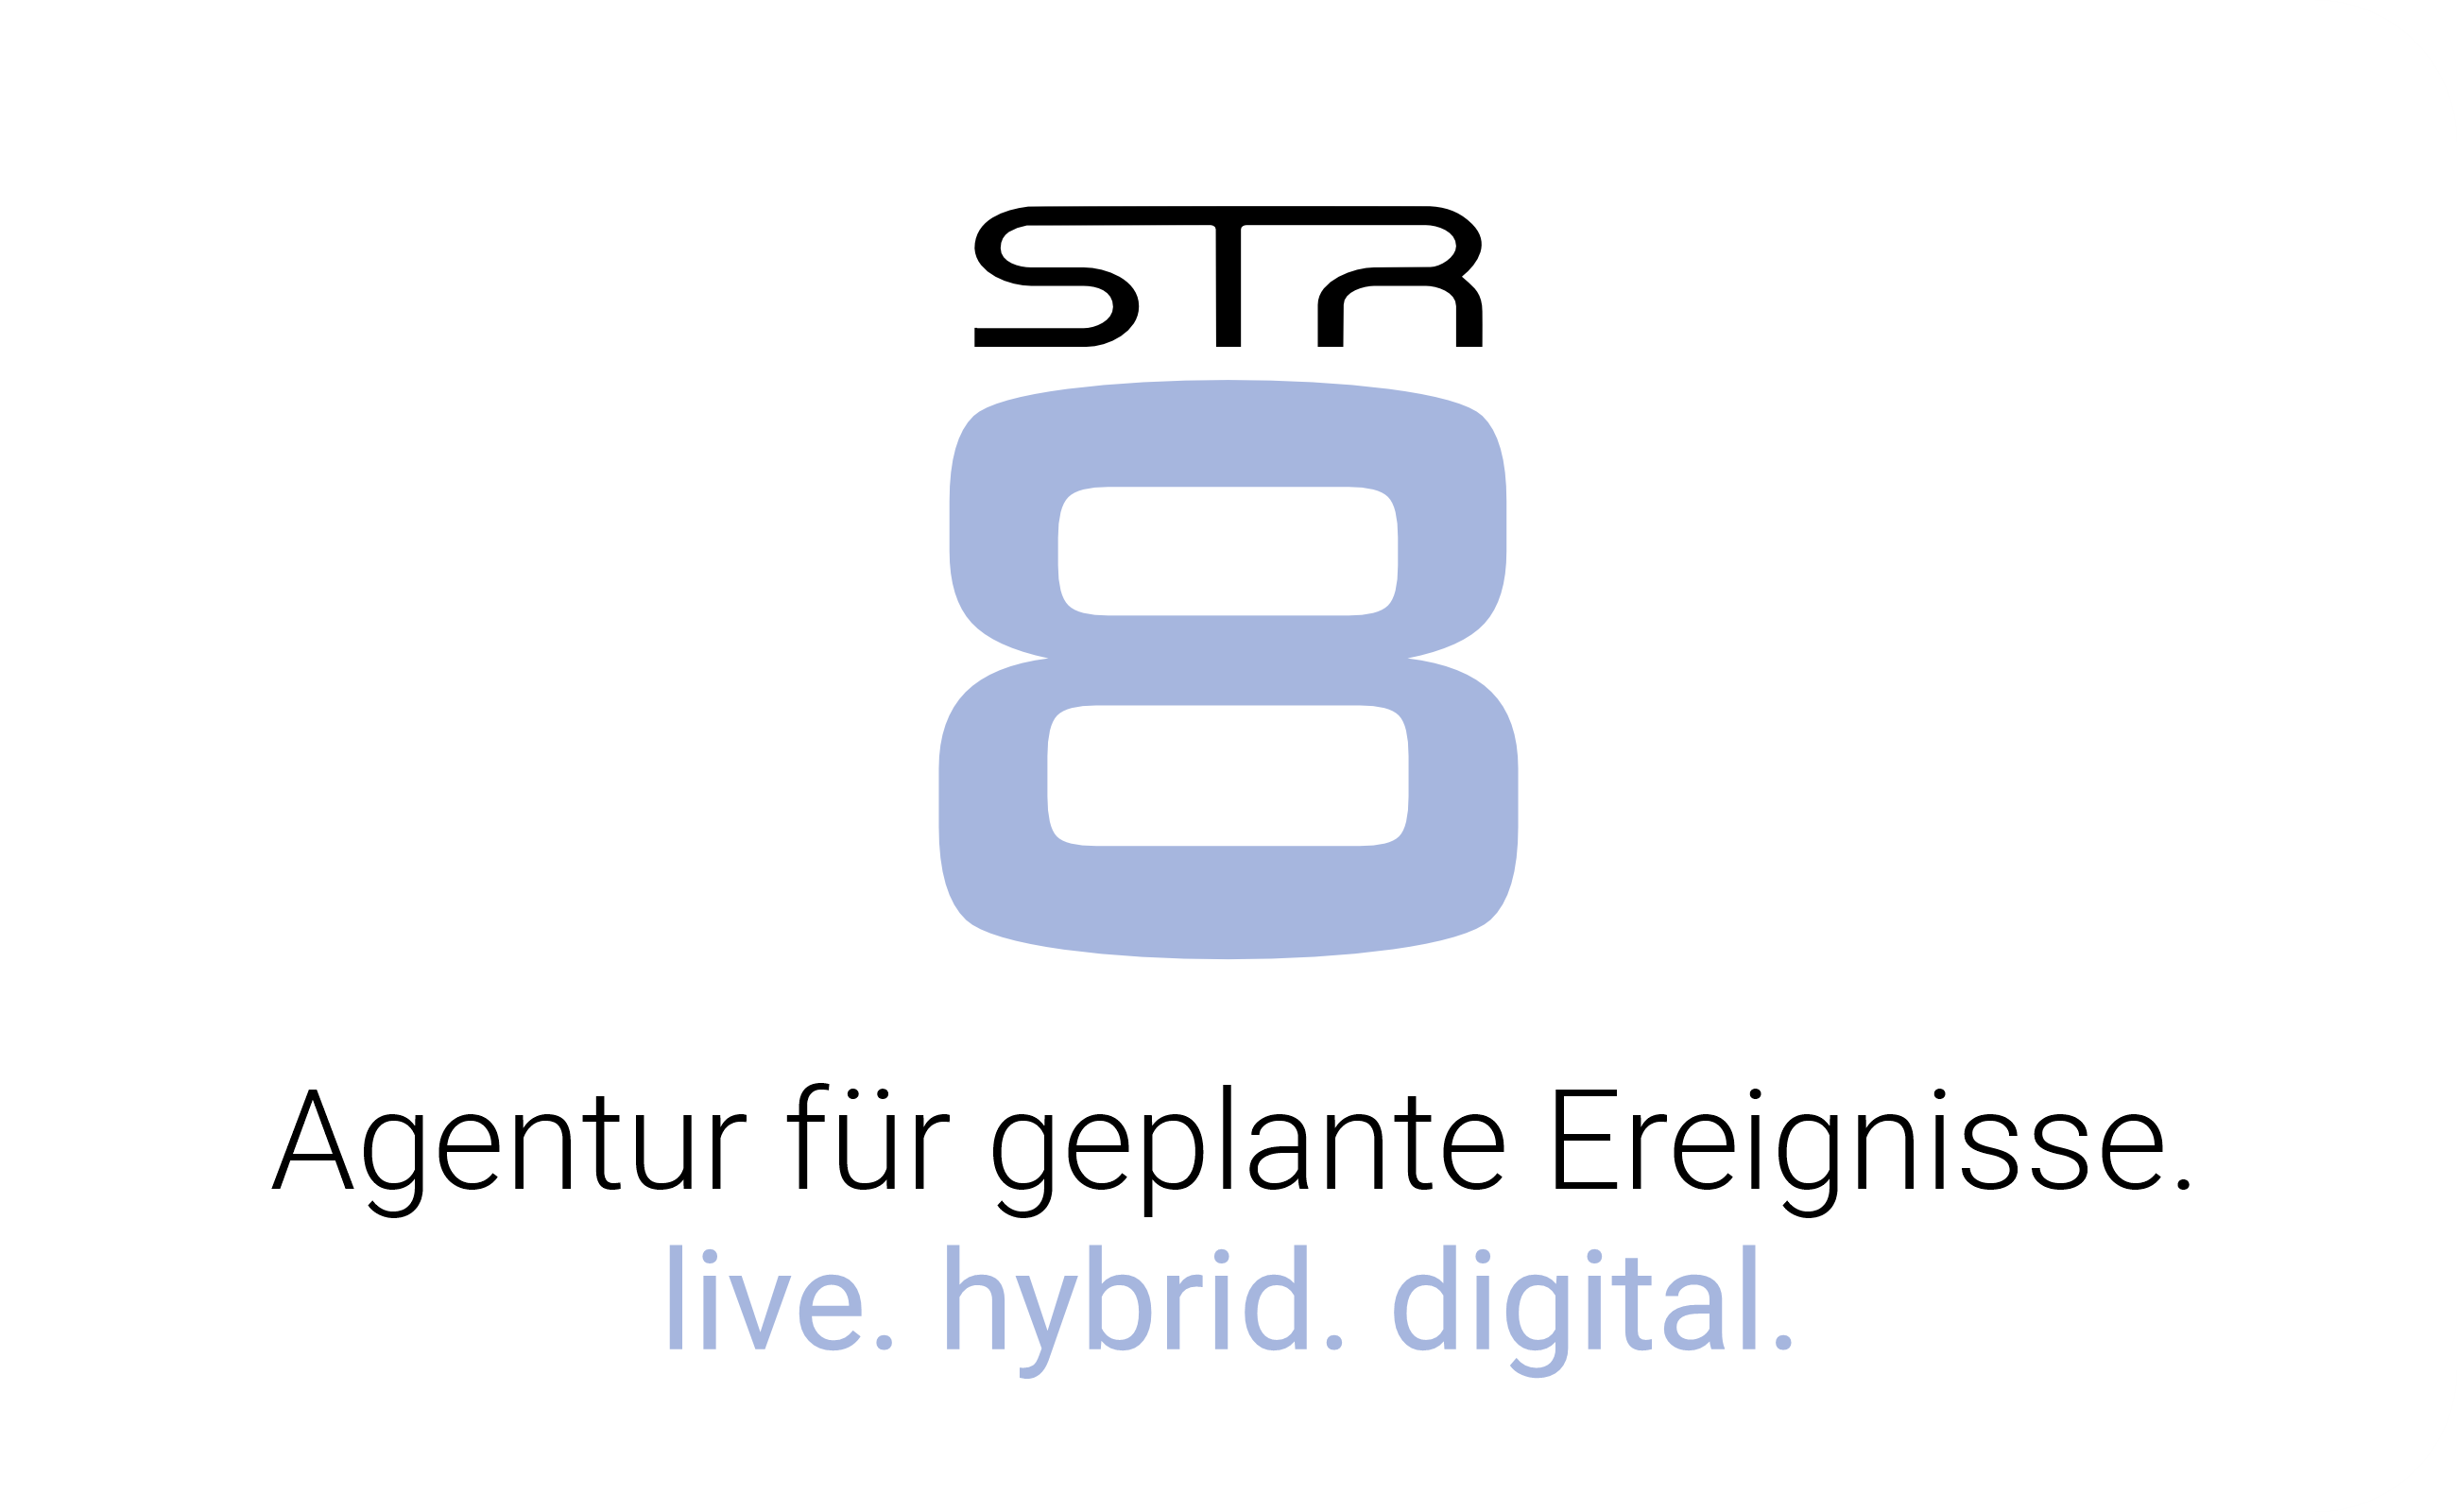 STR8-Logoflag-1